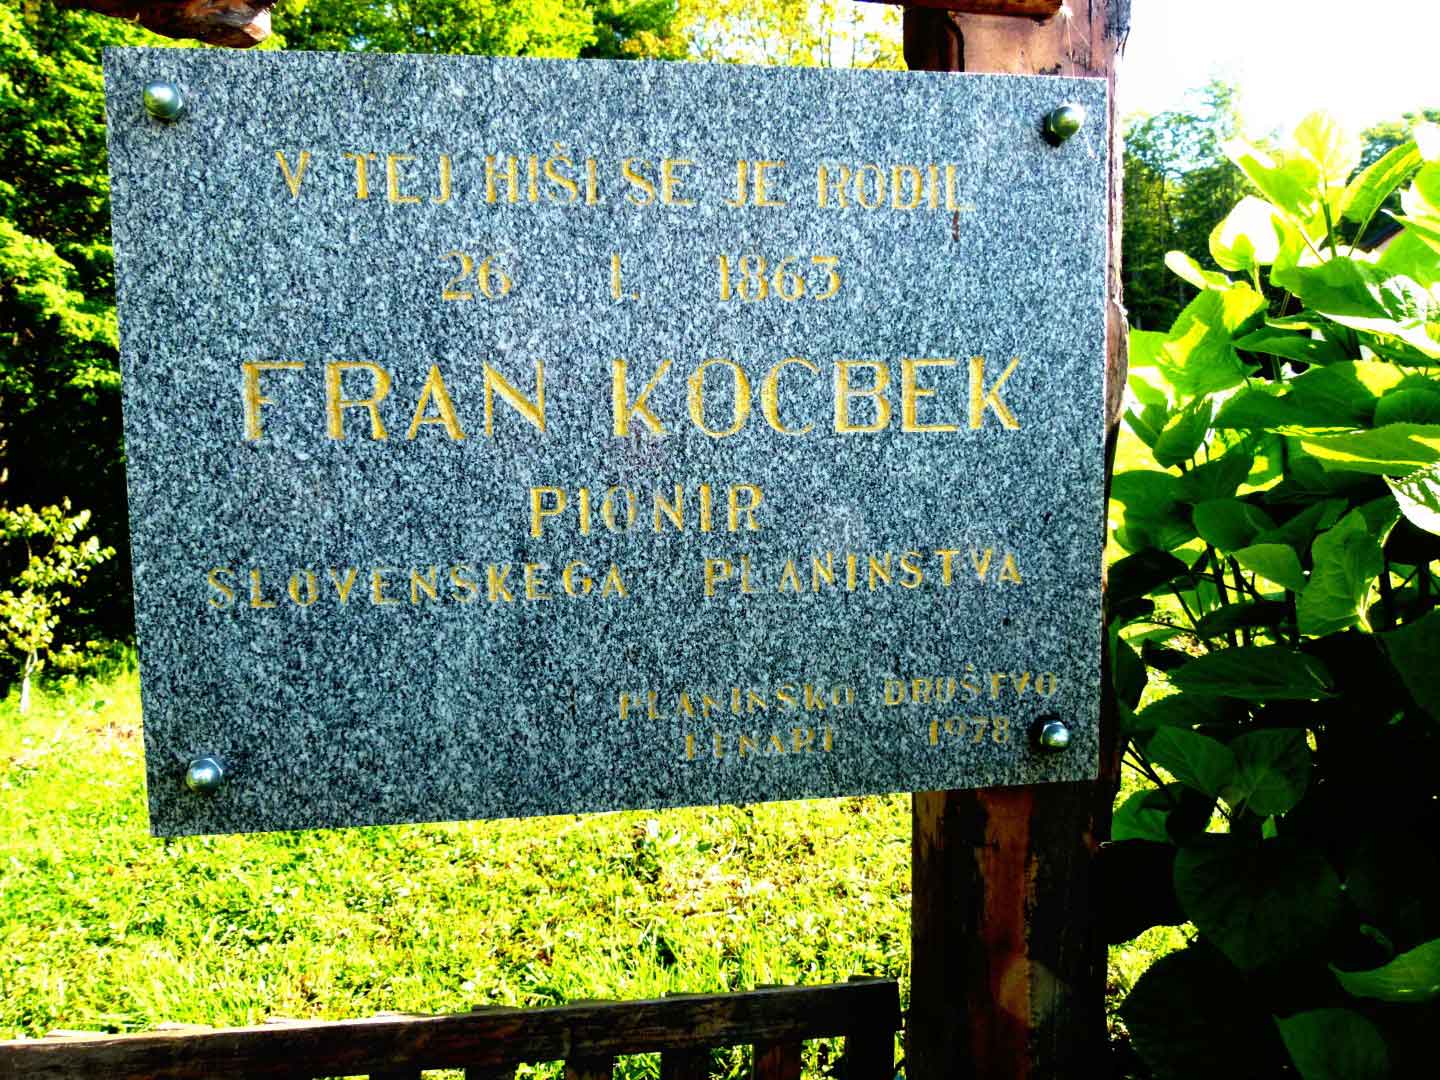 Spominska plošča na spominskem kraju, kjer je bila rojstna hiša Franca Kocbeka (1863 - 1930), na Ločkem Vrhu pri Benediktu